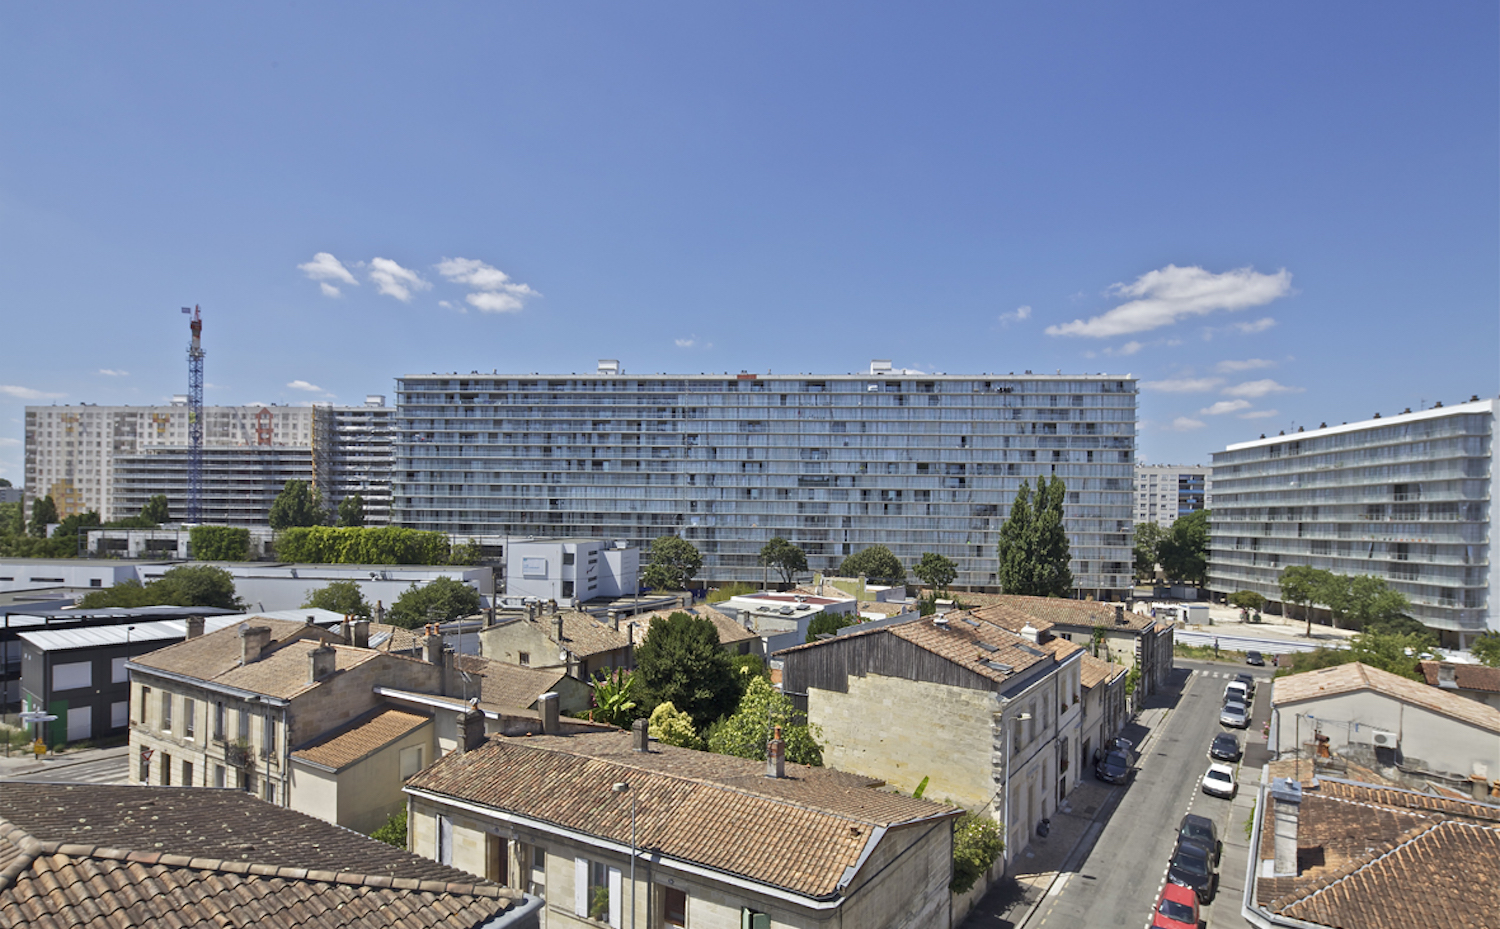 La transformación de 530 viviendas en Burdeos, por Lacaton&Vassal, ha ganado en la categoría Lugares Personales. Primera edición de Living Places - Premio Simon de Arquitectura